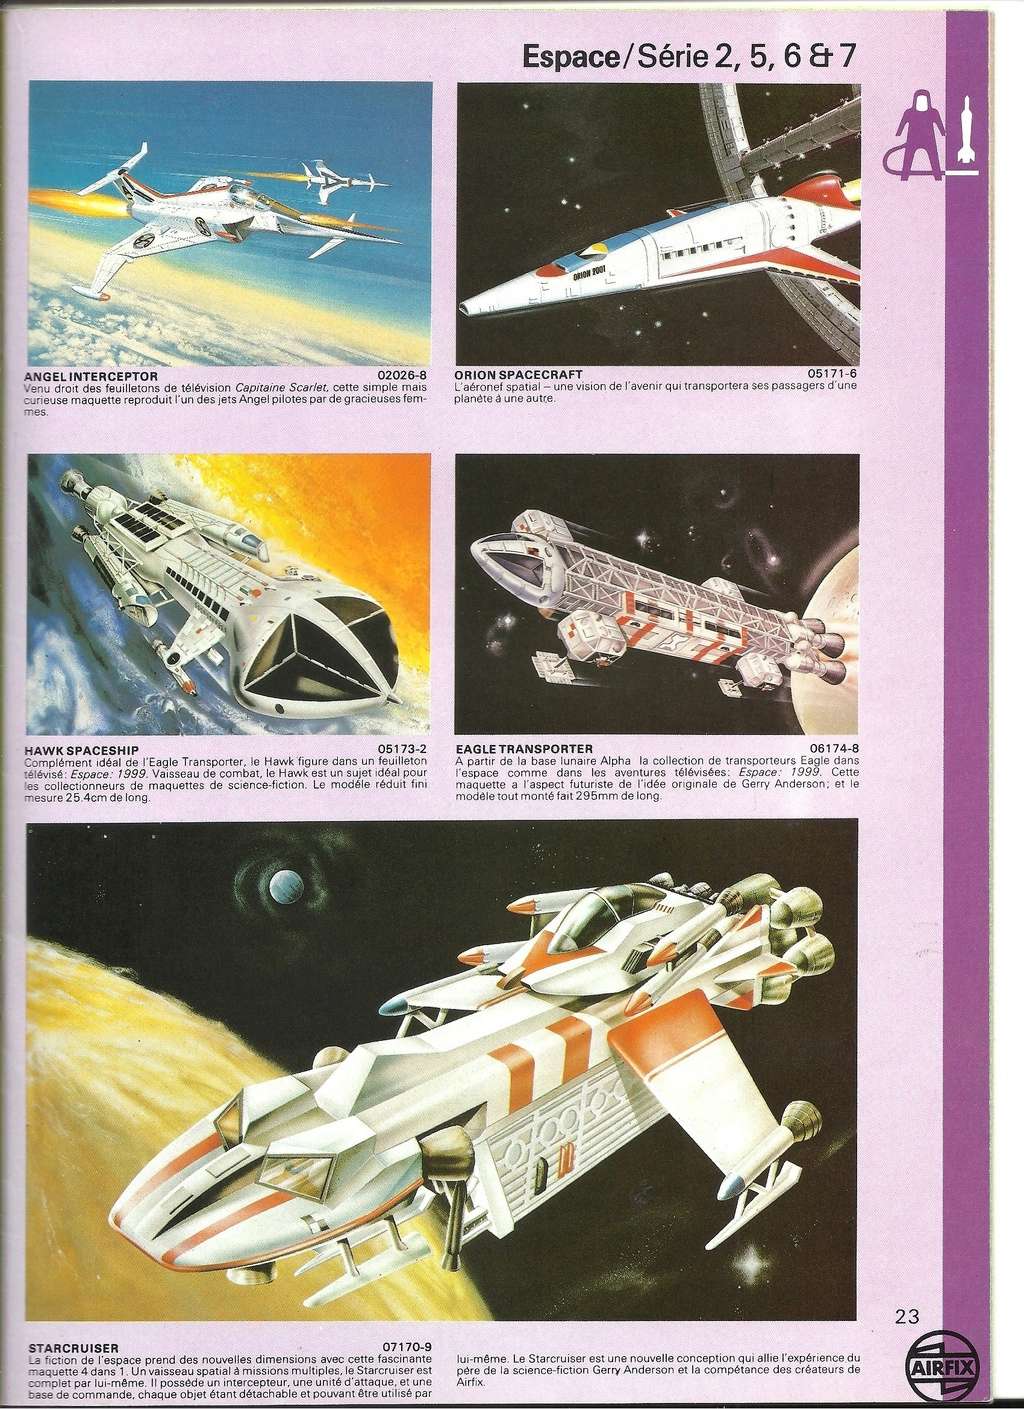 [AIRFIX 1979] Catalogue 1979 16ème édition Airfix86